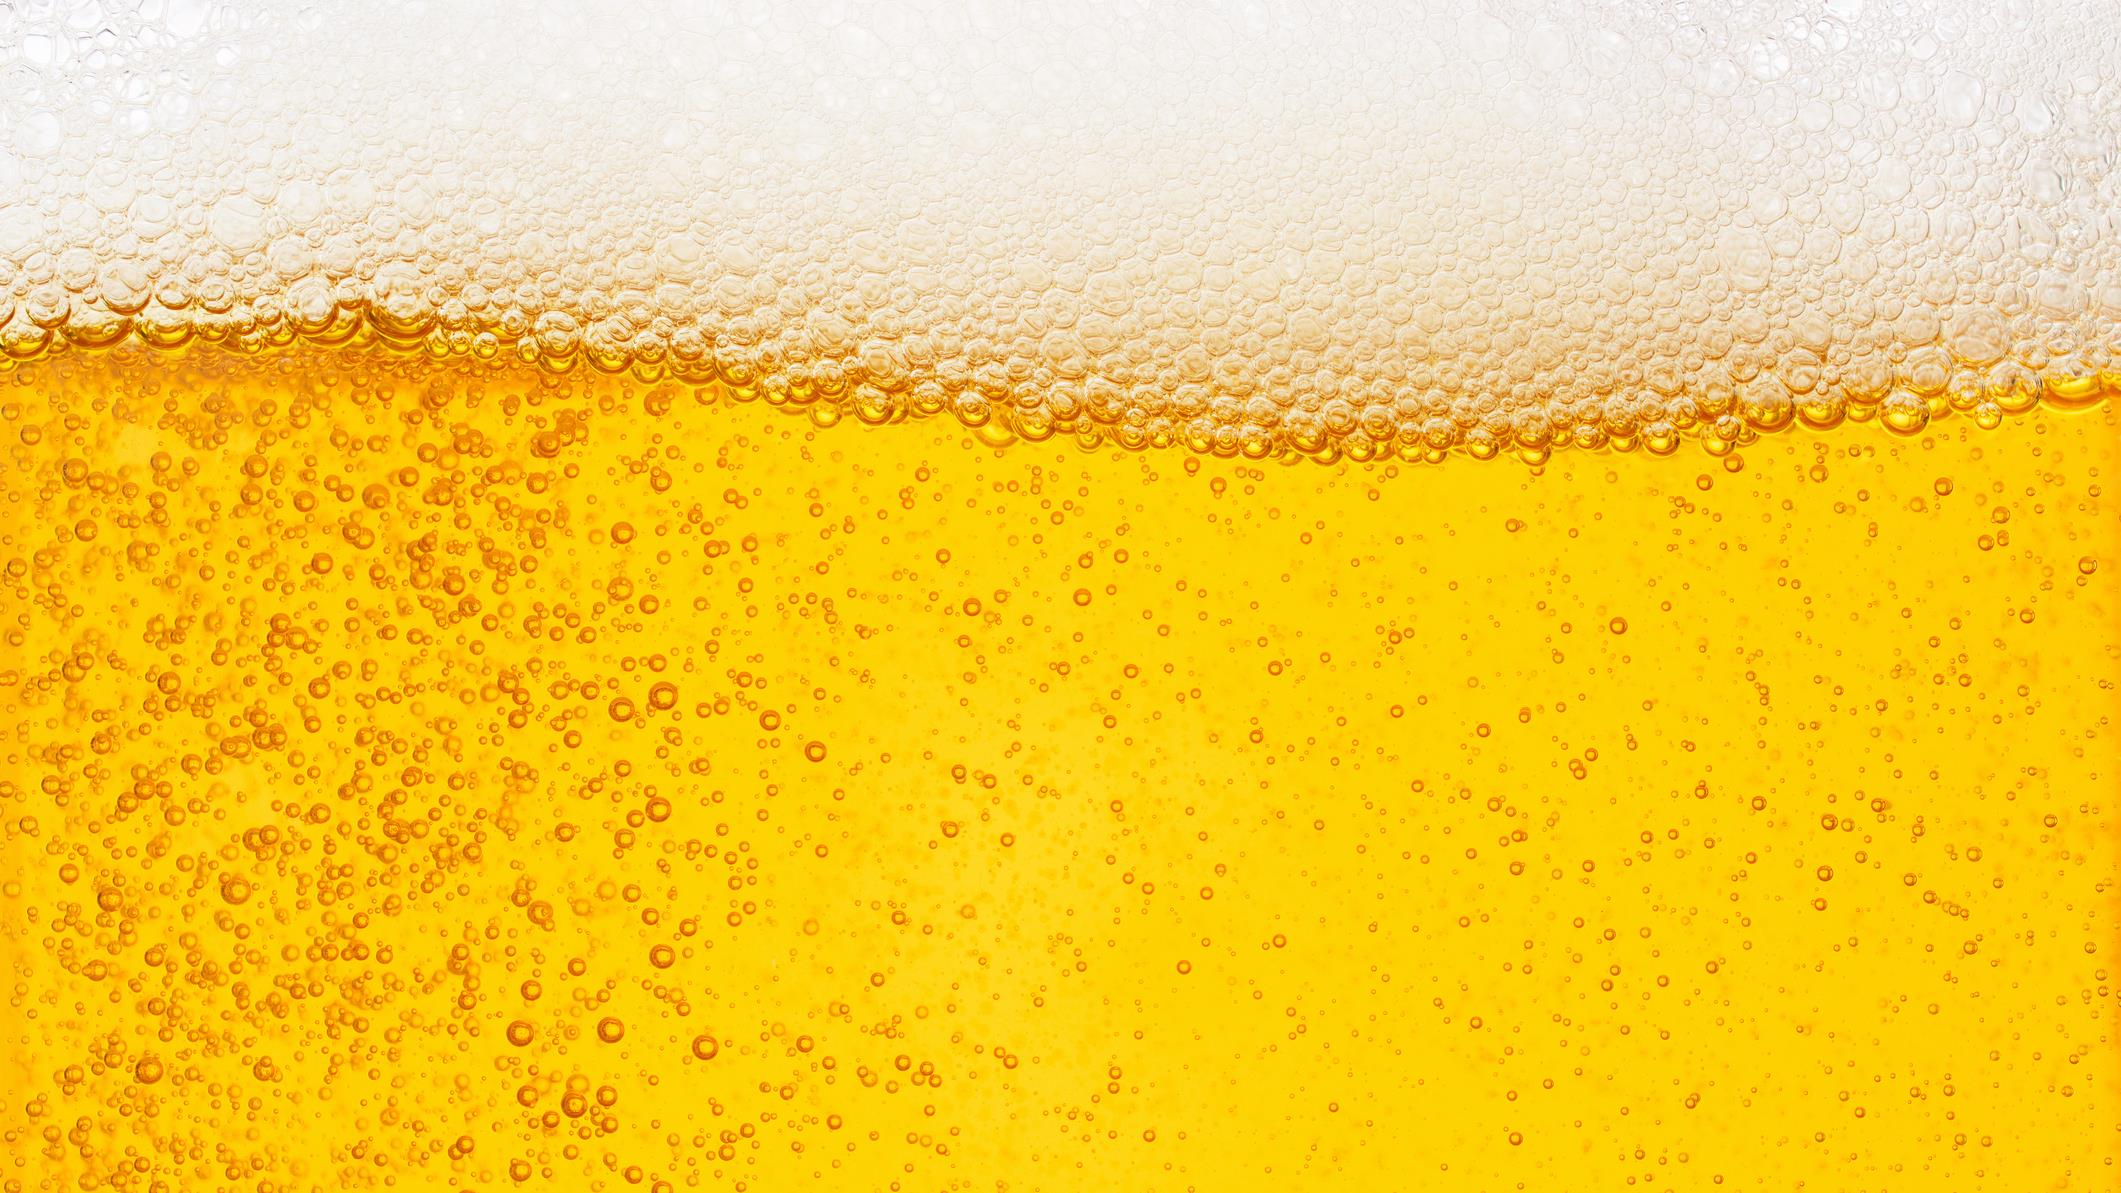 La dynamique complexe des bulles dans votre verre de bière